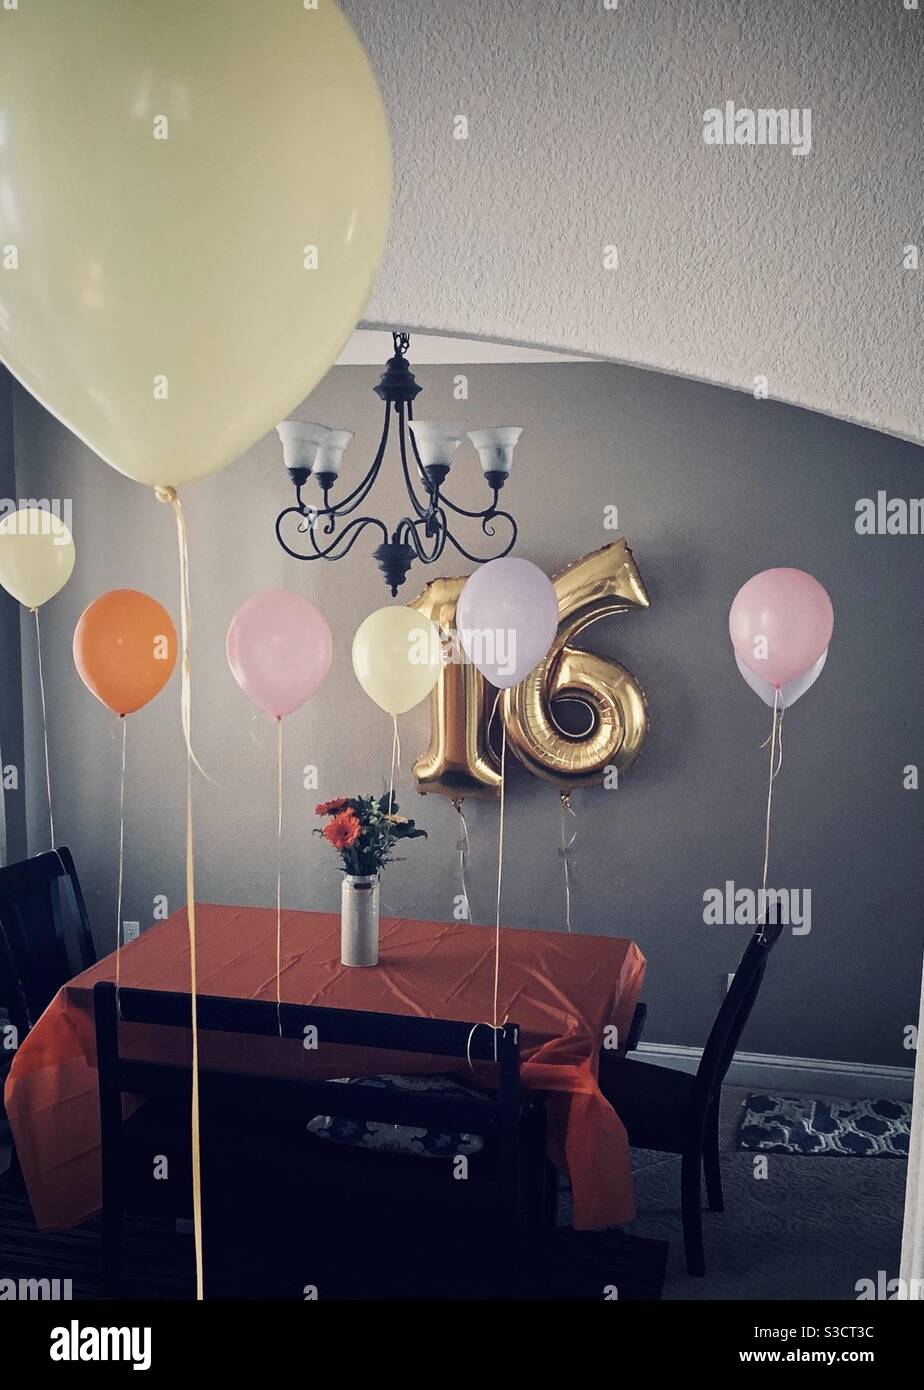 Feiern Sie eine süße sechzehn Geburtstagsfeier mit Ballons und ein Schön dekorierter Esstisch - goldene Ballons und Esstisch Dekoriert für eine Geburtstagsfeier Stockfoto